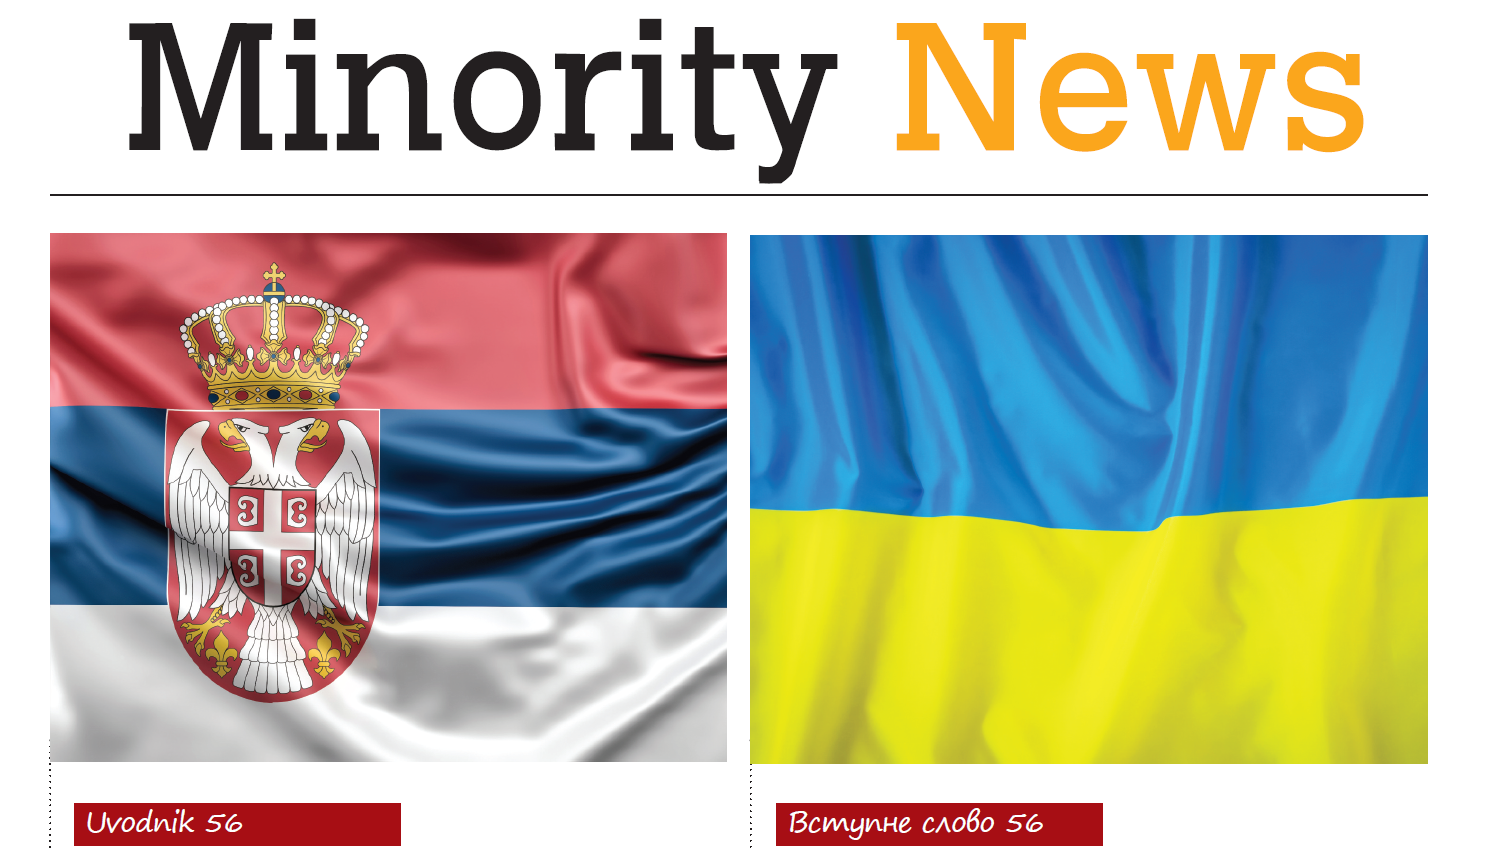 Minority News (PDF) 1